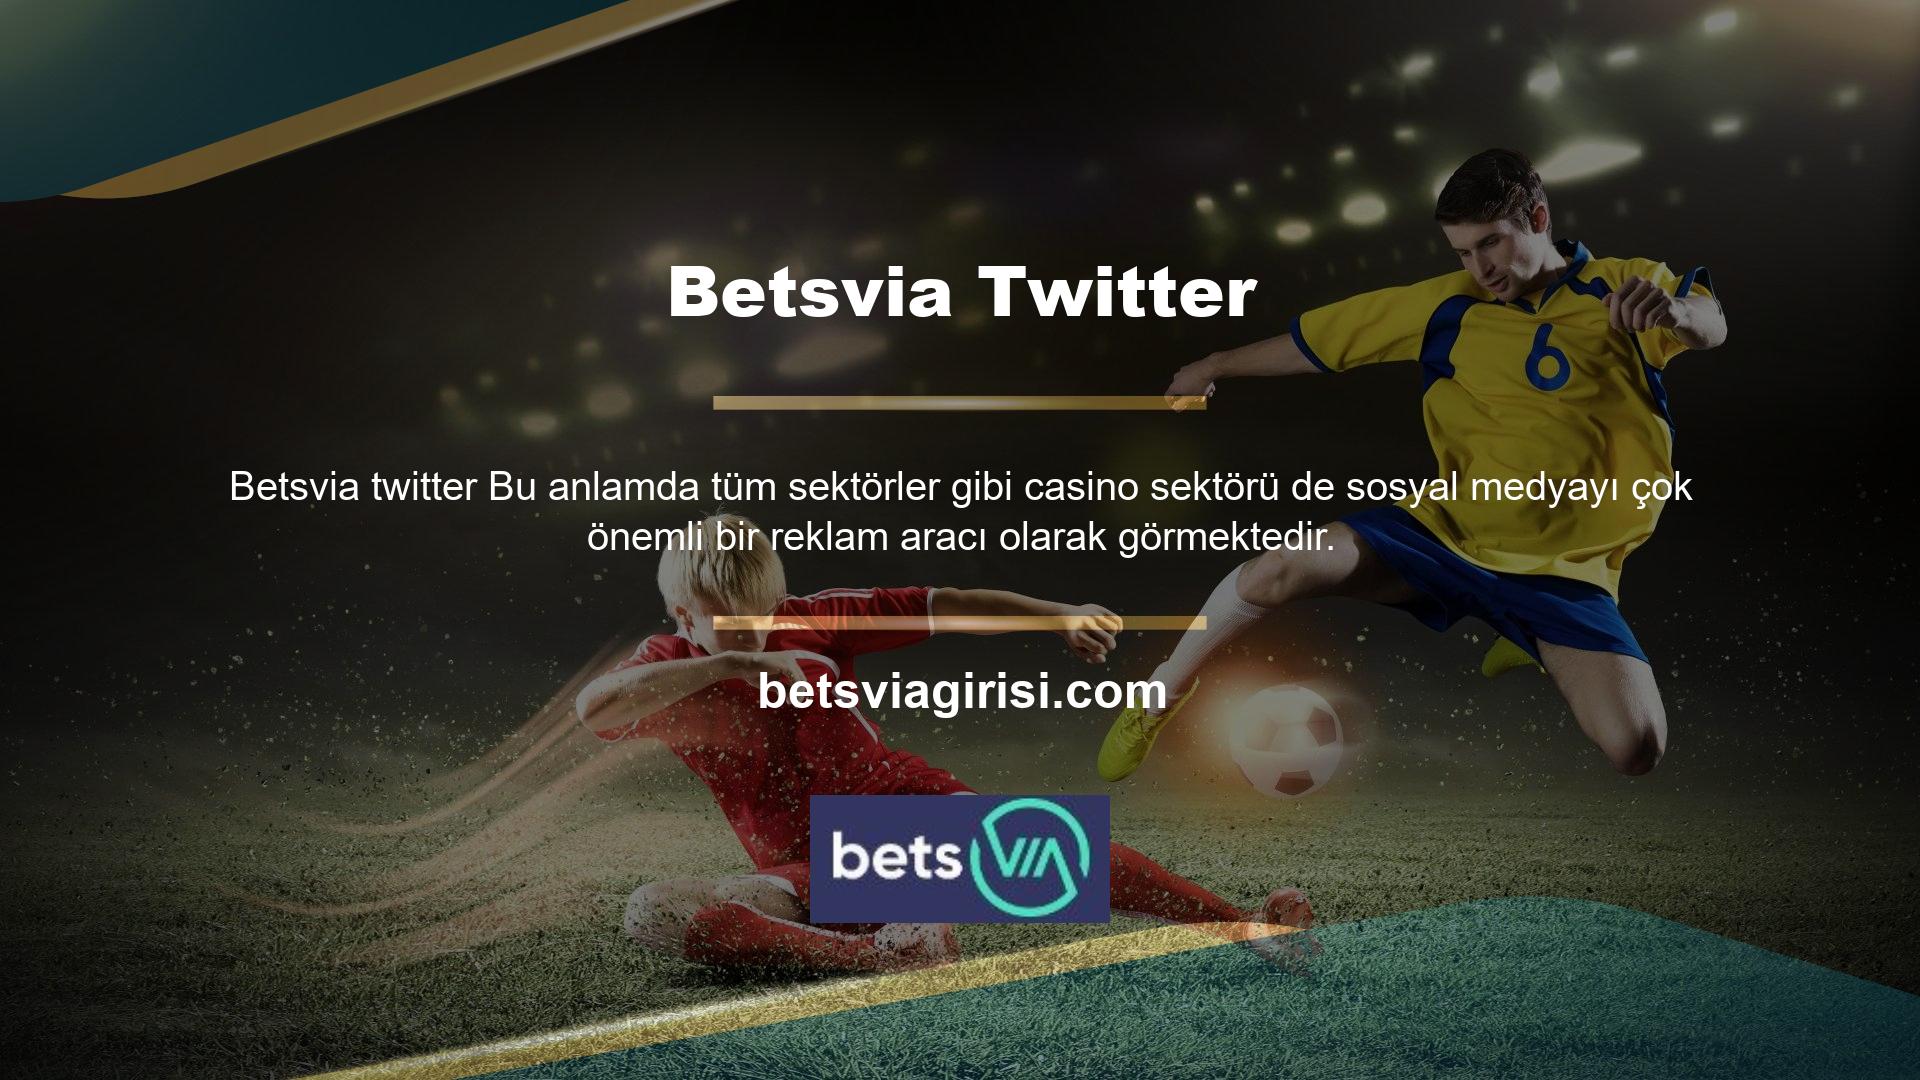 Twitter sayfası Betsvia, bu kapsamda sosyal medyayı aktif olarak kullanan en iyi bahis siteleri arasında oyuncuları sıralamaya devam ediyor